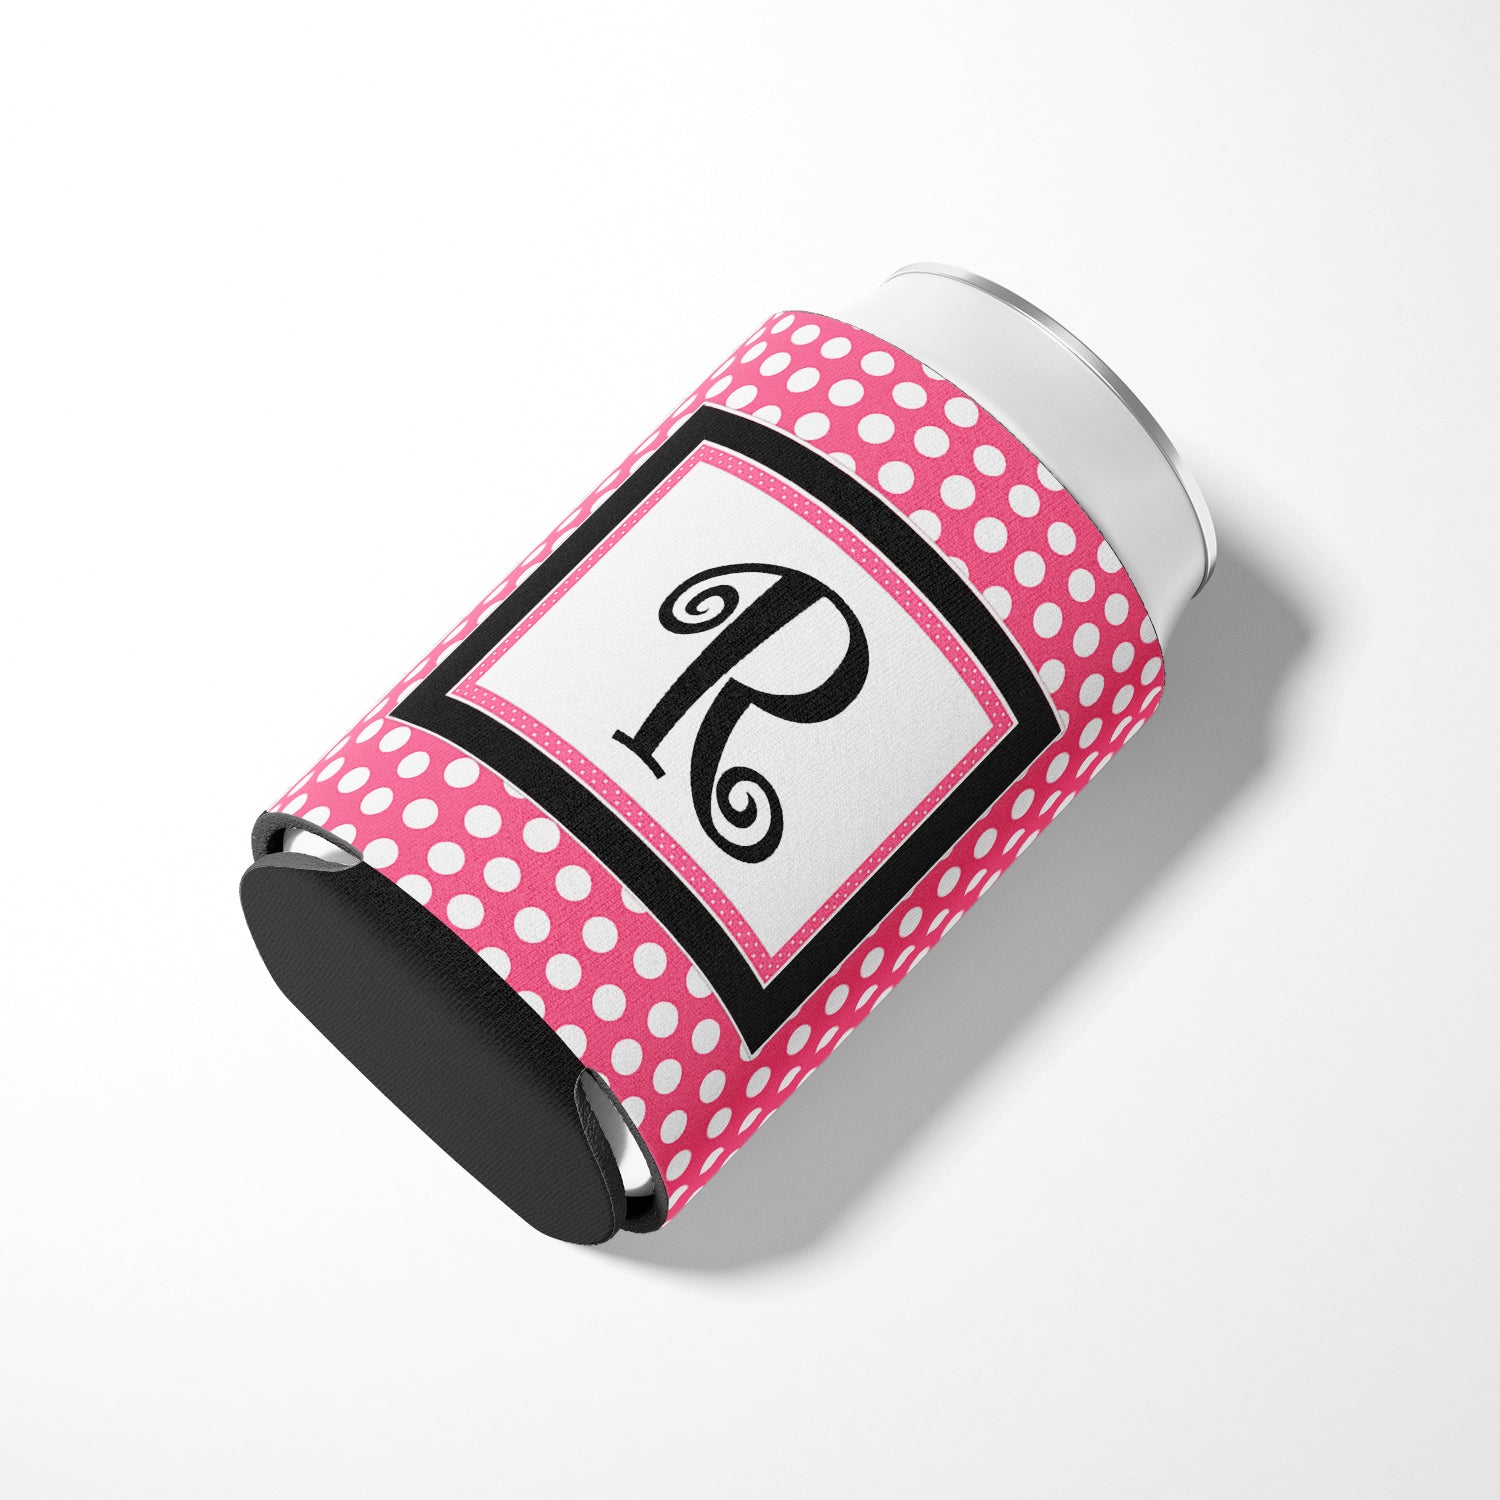 Letter R Initial Monogram - Pink Black Polka Dots Can or Bottle Beverage Insulator Hugger.